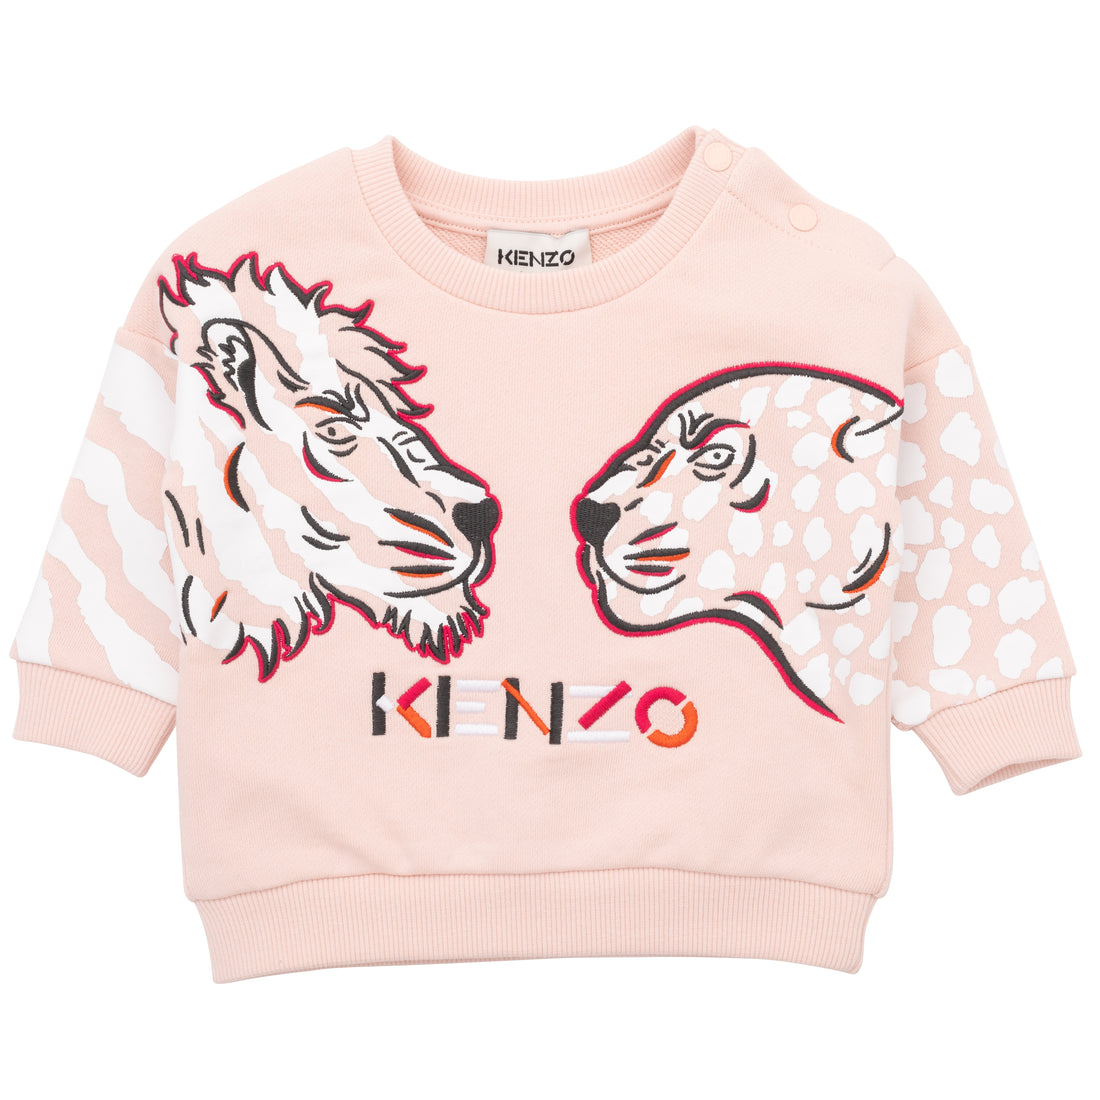 Kenzo Sweatshirt Style: K05415